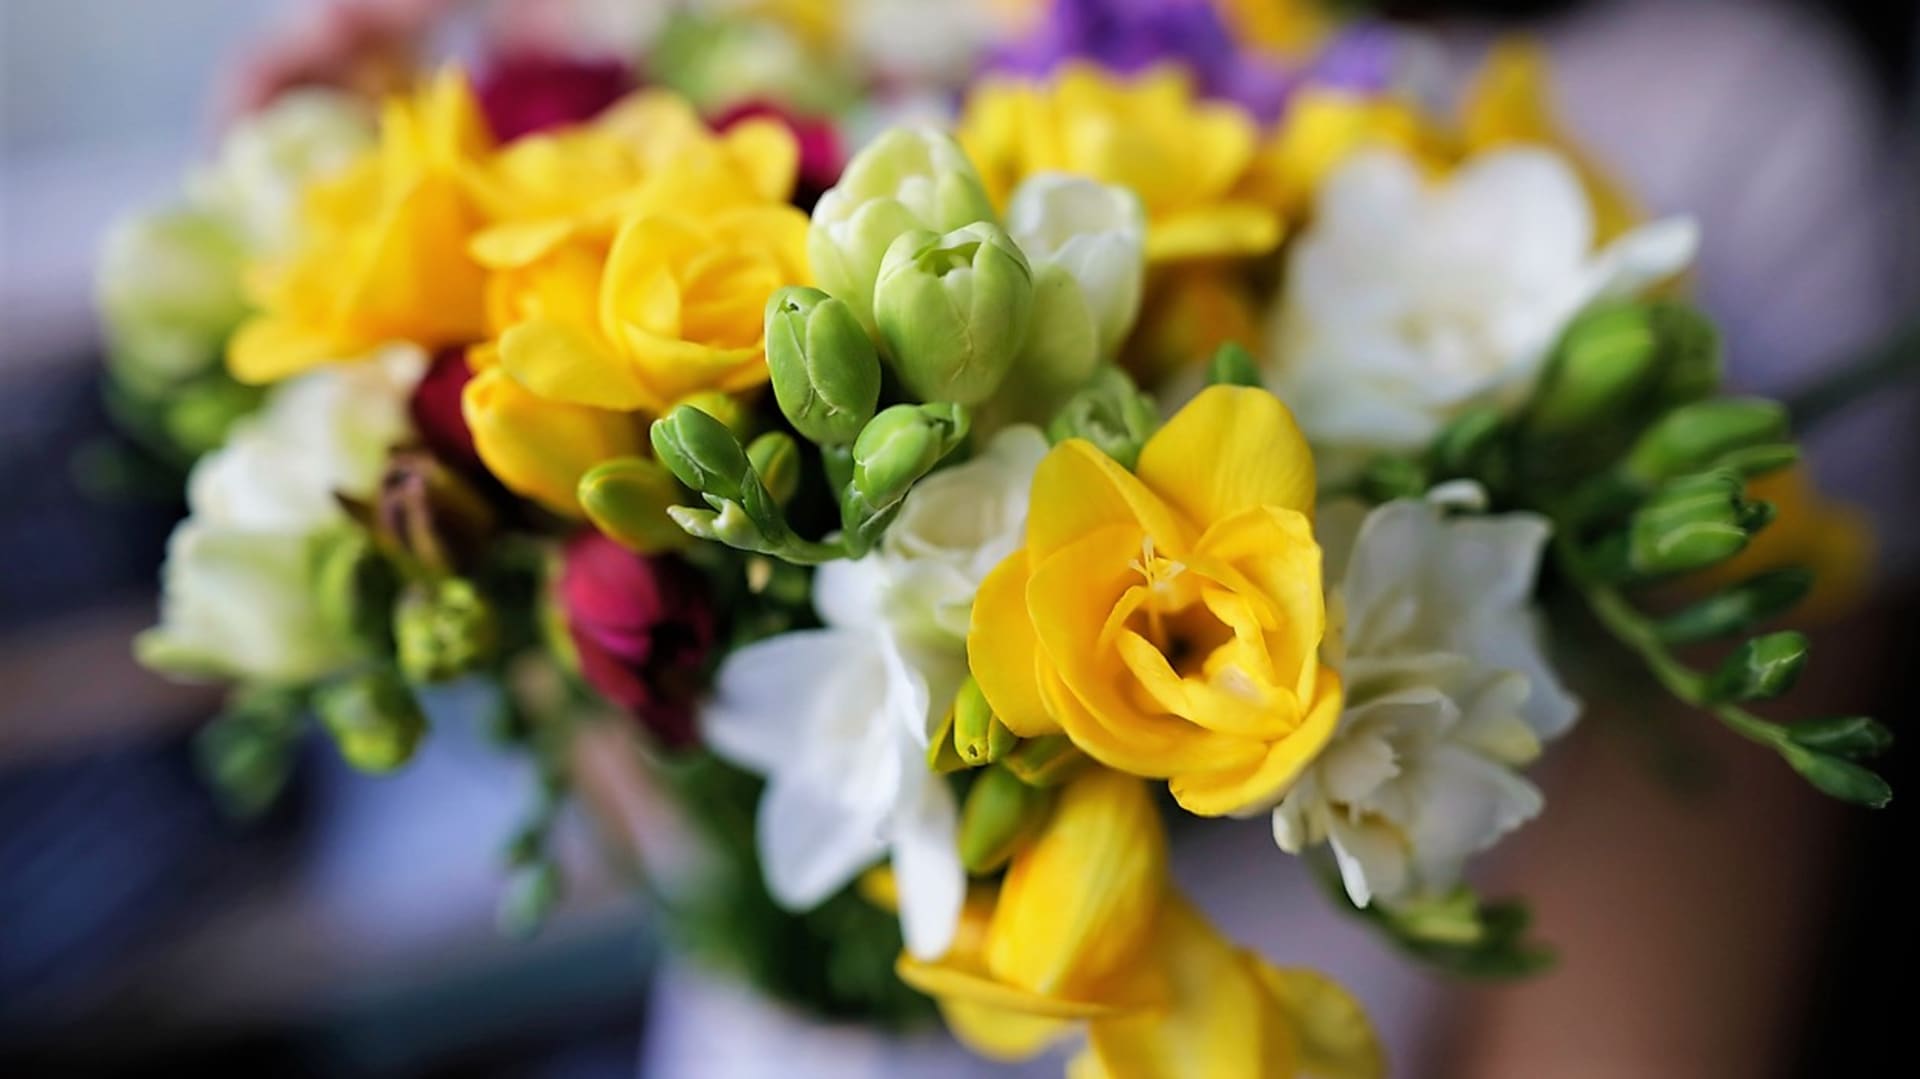 Frézie jsou oblíbené především jako jarní řezané květiny. Víte, že si je můžete sami vypěstovat?